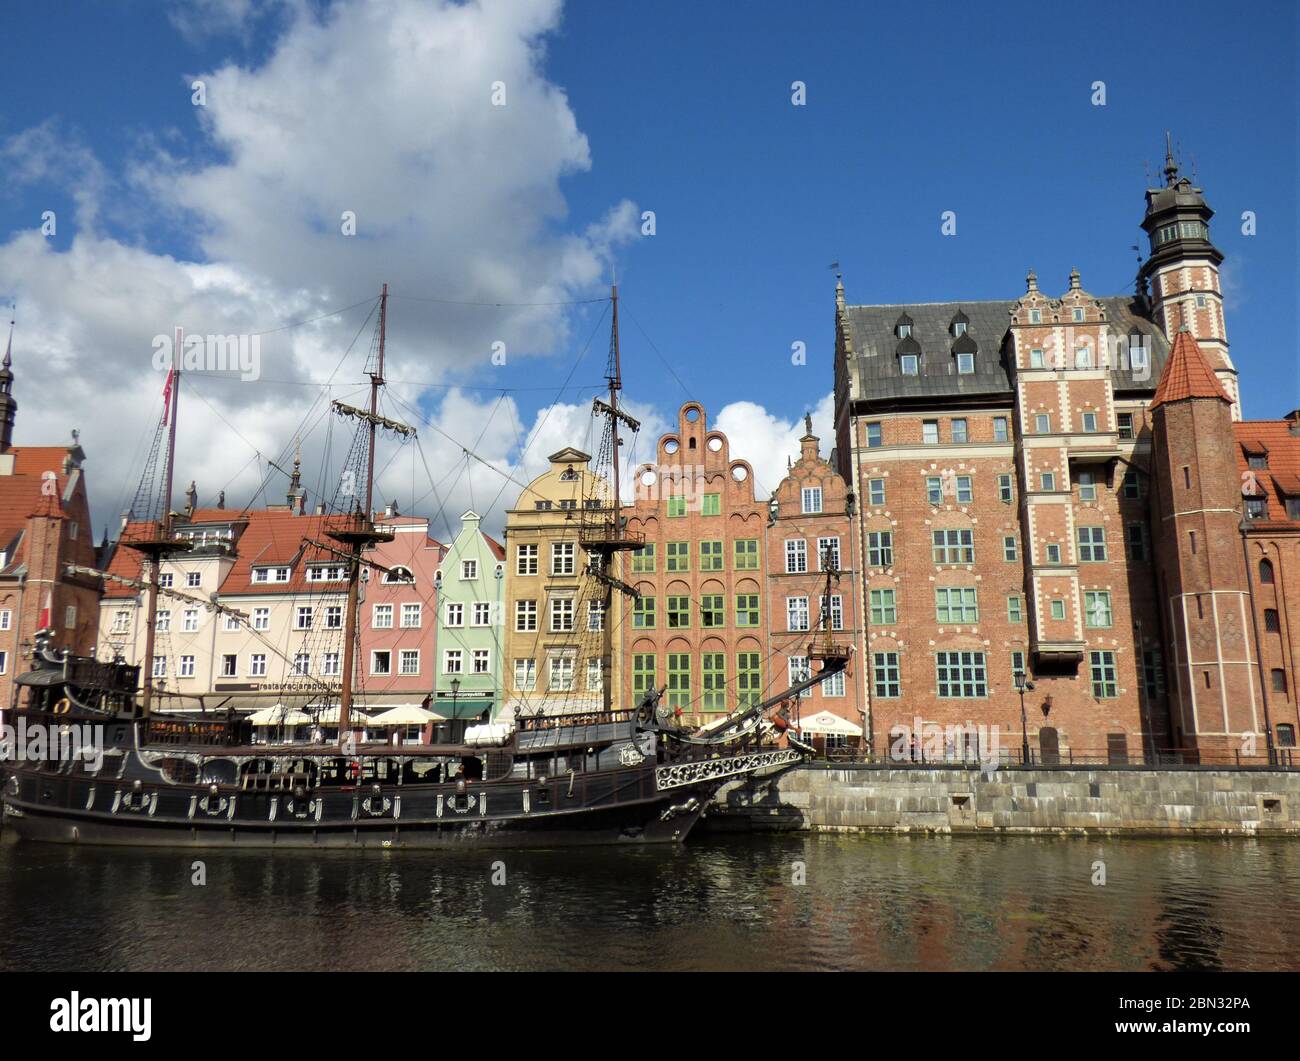 Belle vue ensoleillée sur le remblai de la rivière Motlawa, bâtiments historiques et bateaux touristiques dans la vieille ville, Gdansk, Pologne. Banque D'Images